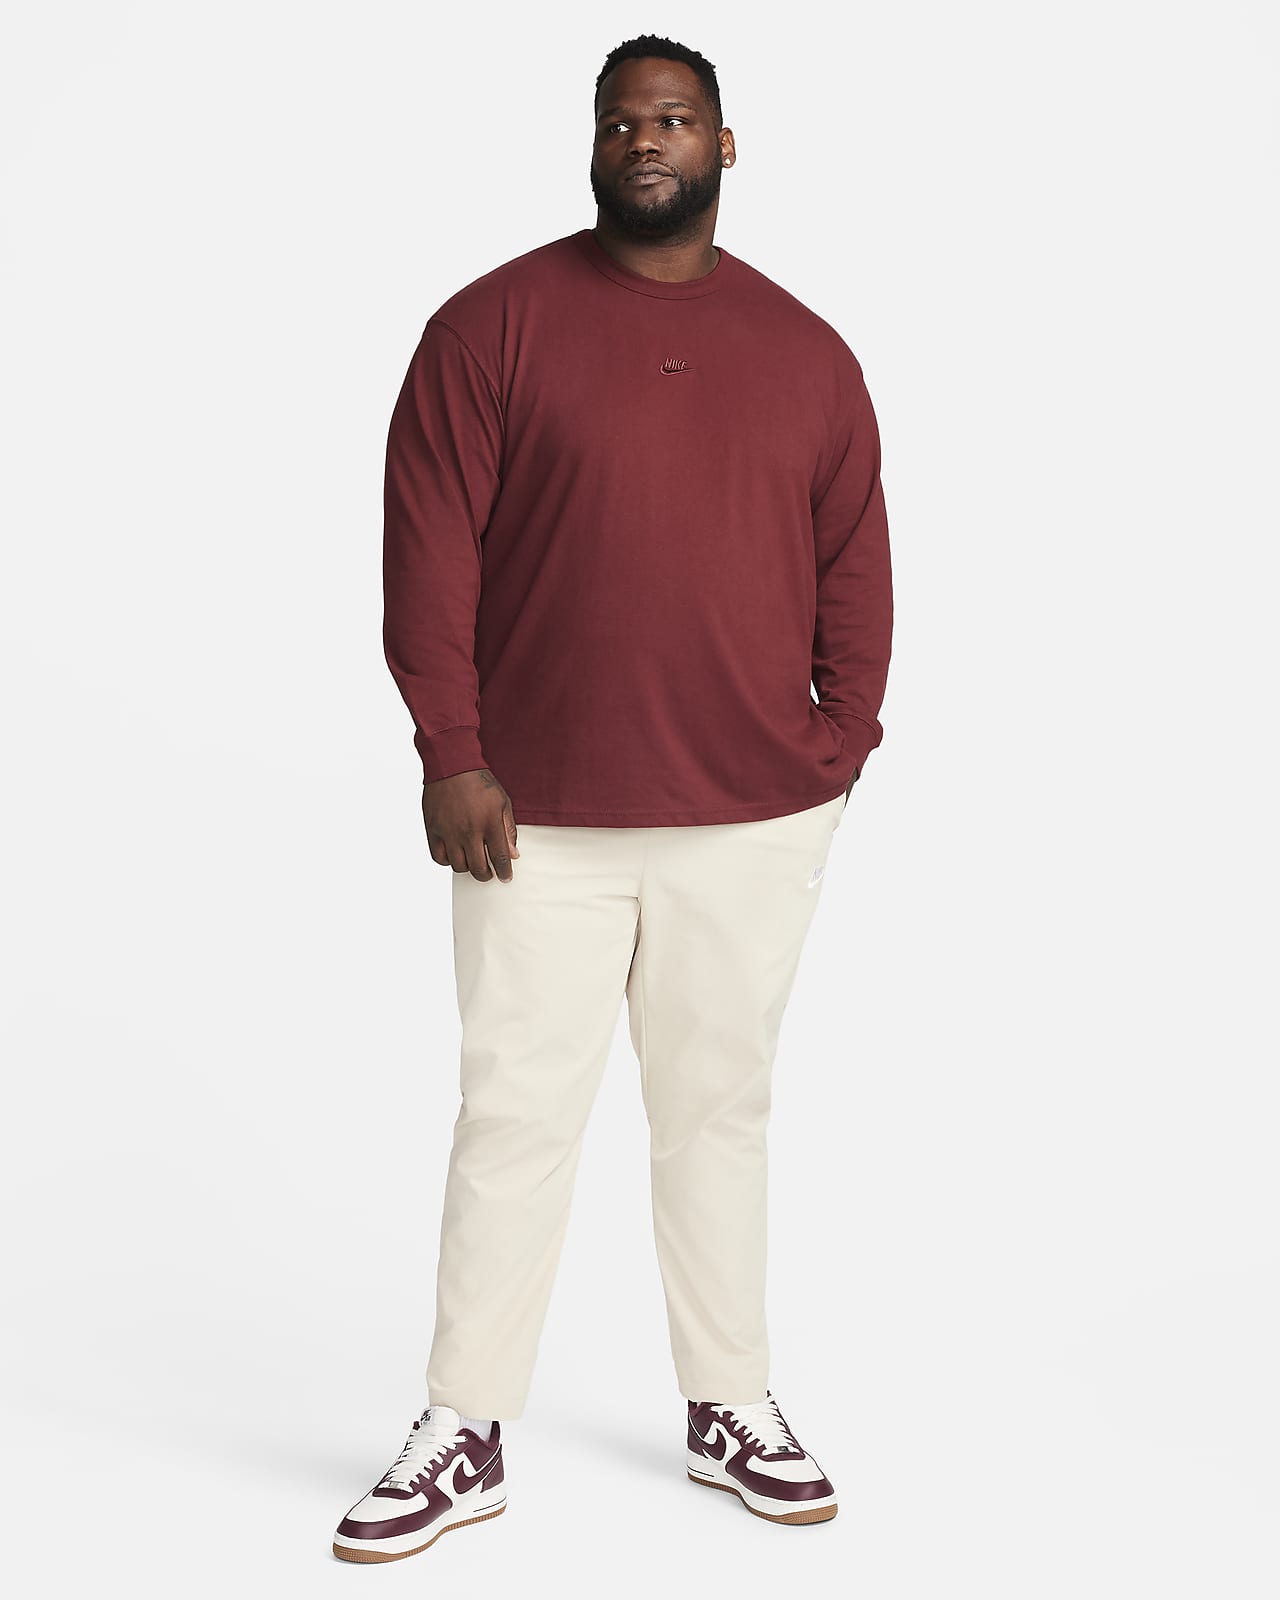 Nike Long Sleeves Tshirts - Buy Nike Long Sleeves Tshirts online